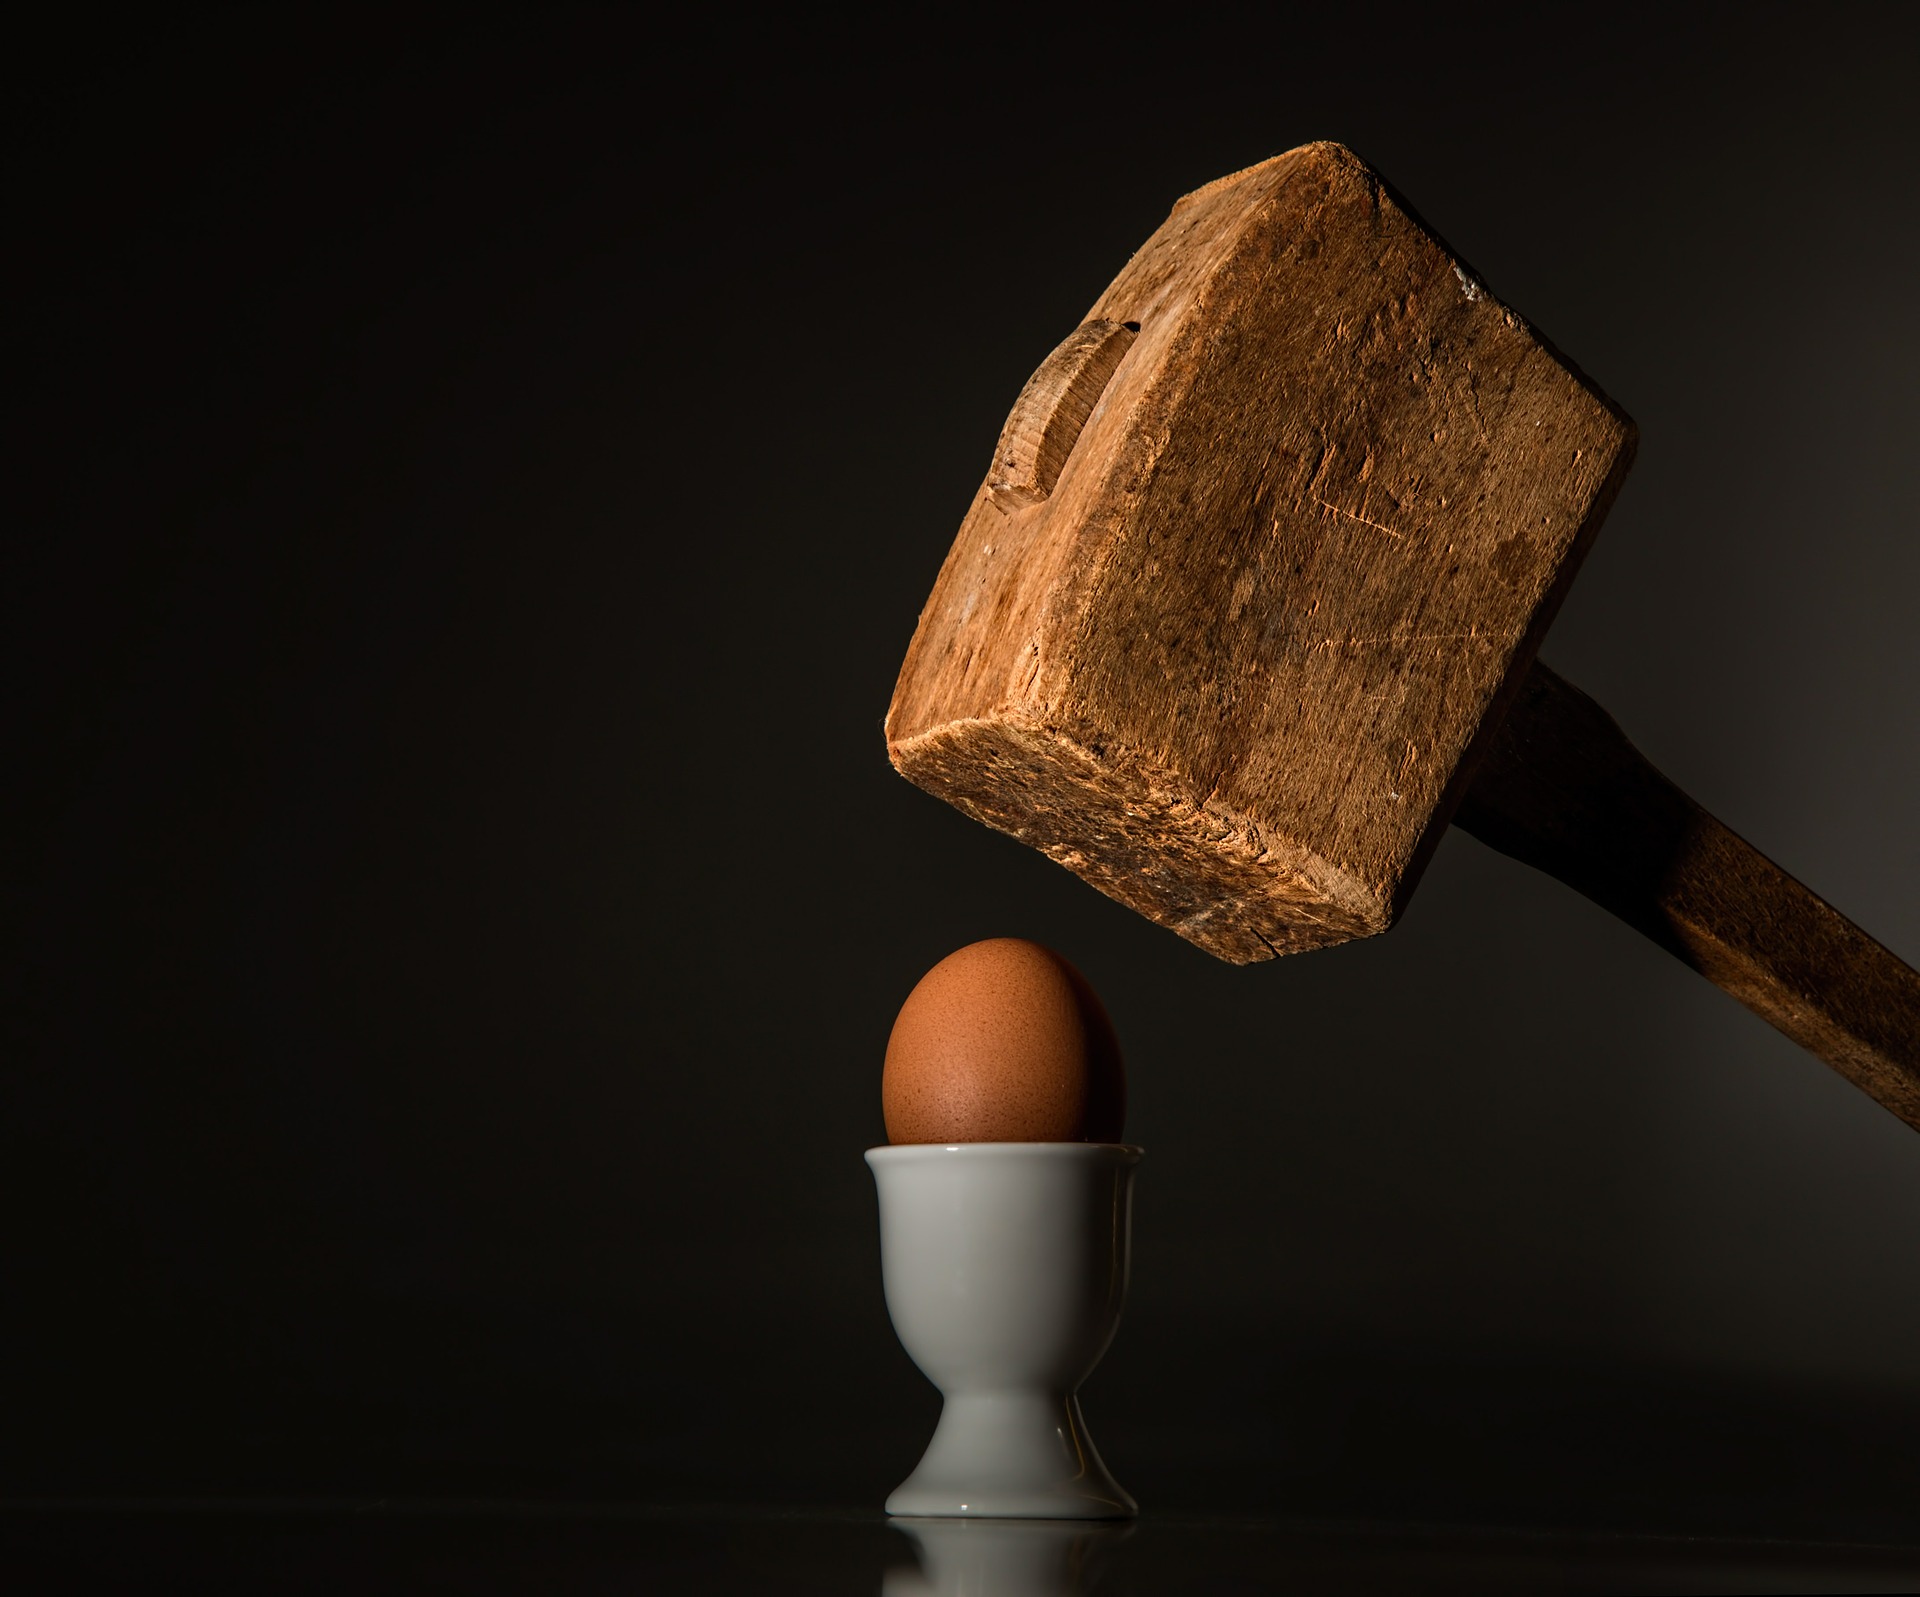 egg and hammer vulnerability scan vs penetration testing